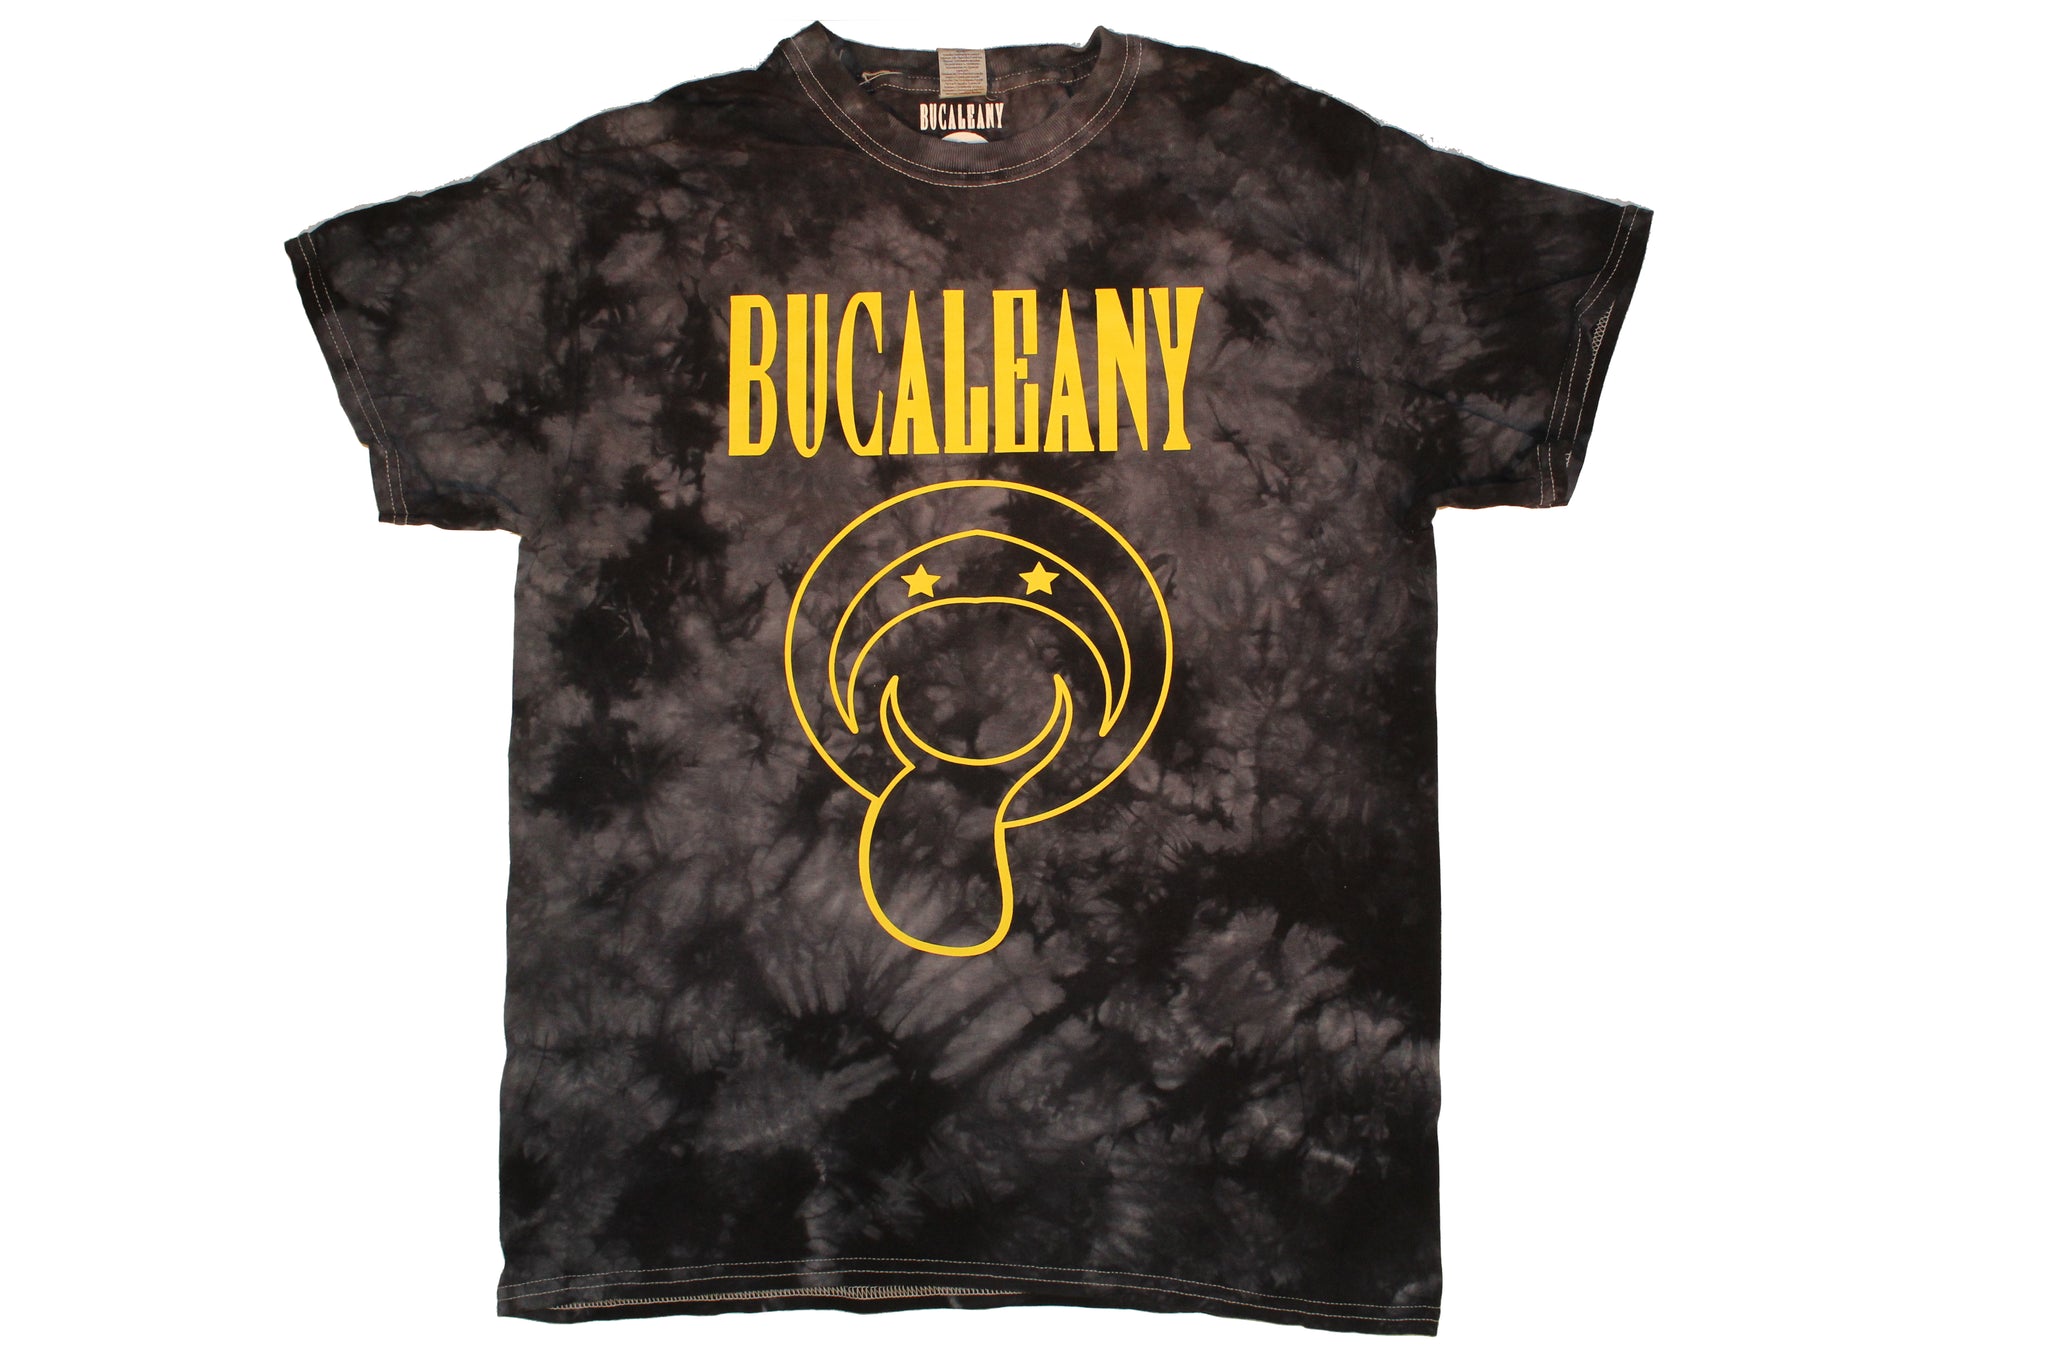 New Bucaleany "Toungeleany" Rockstar Stonewash Dye T-Shirt